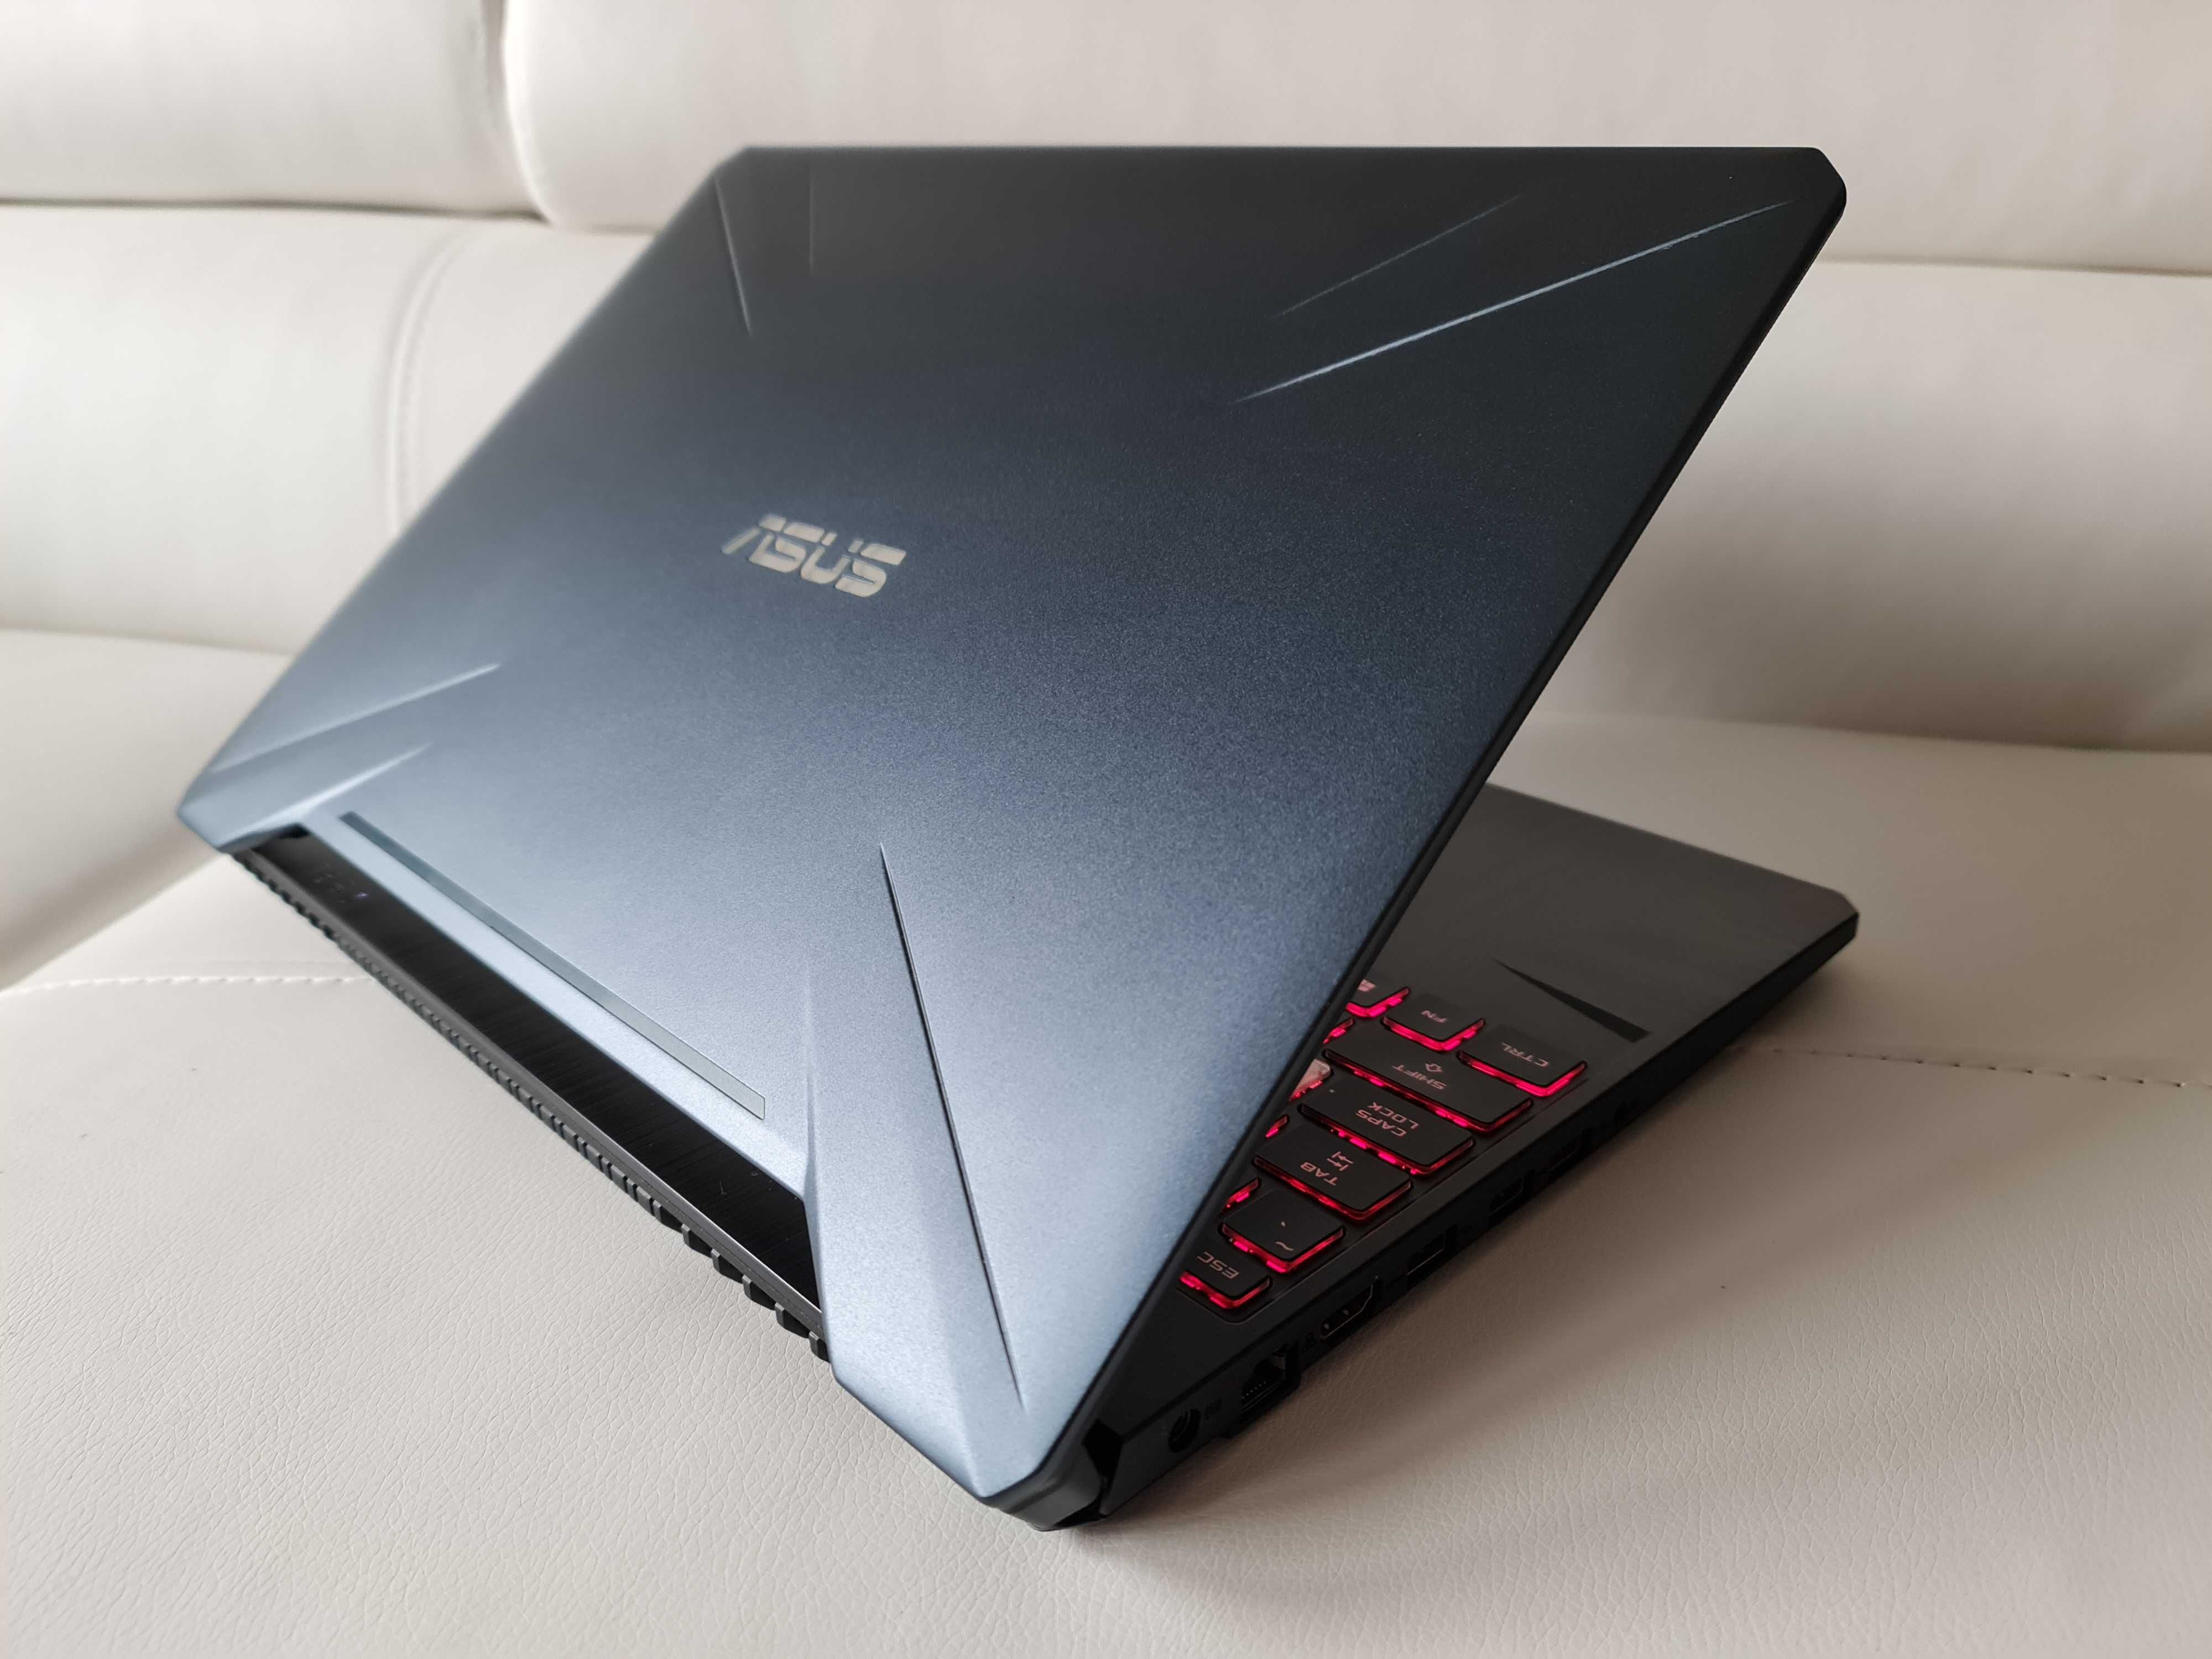 Laptop gaming Asus tuf nou, intel core i7-9750H ,video GTX 1650